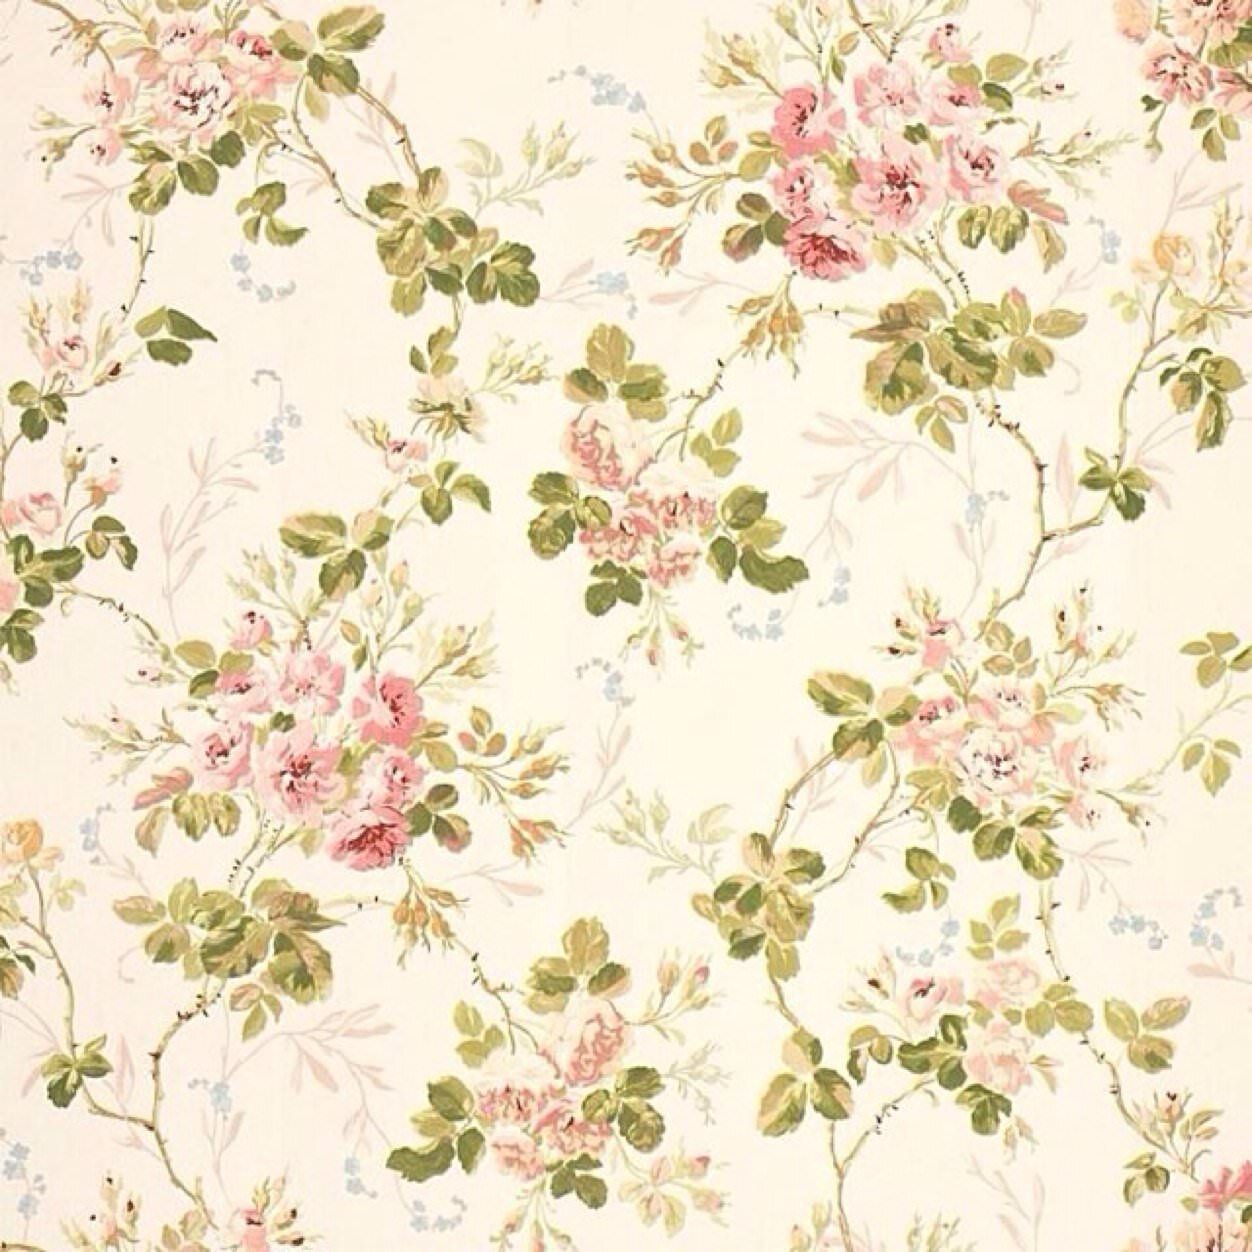 Wallpaper. Vintage floral